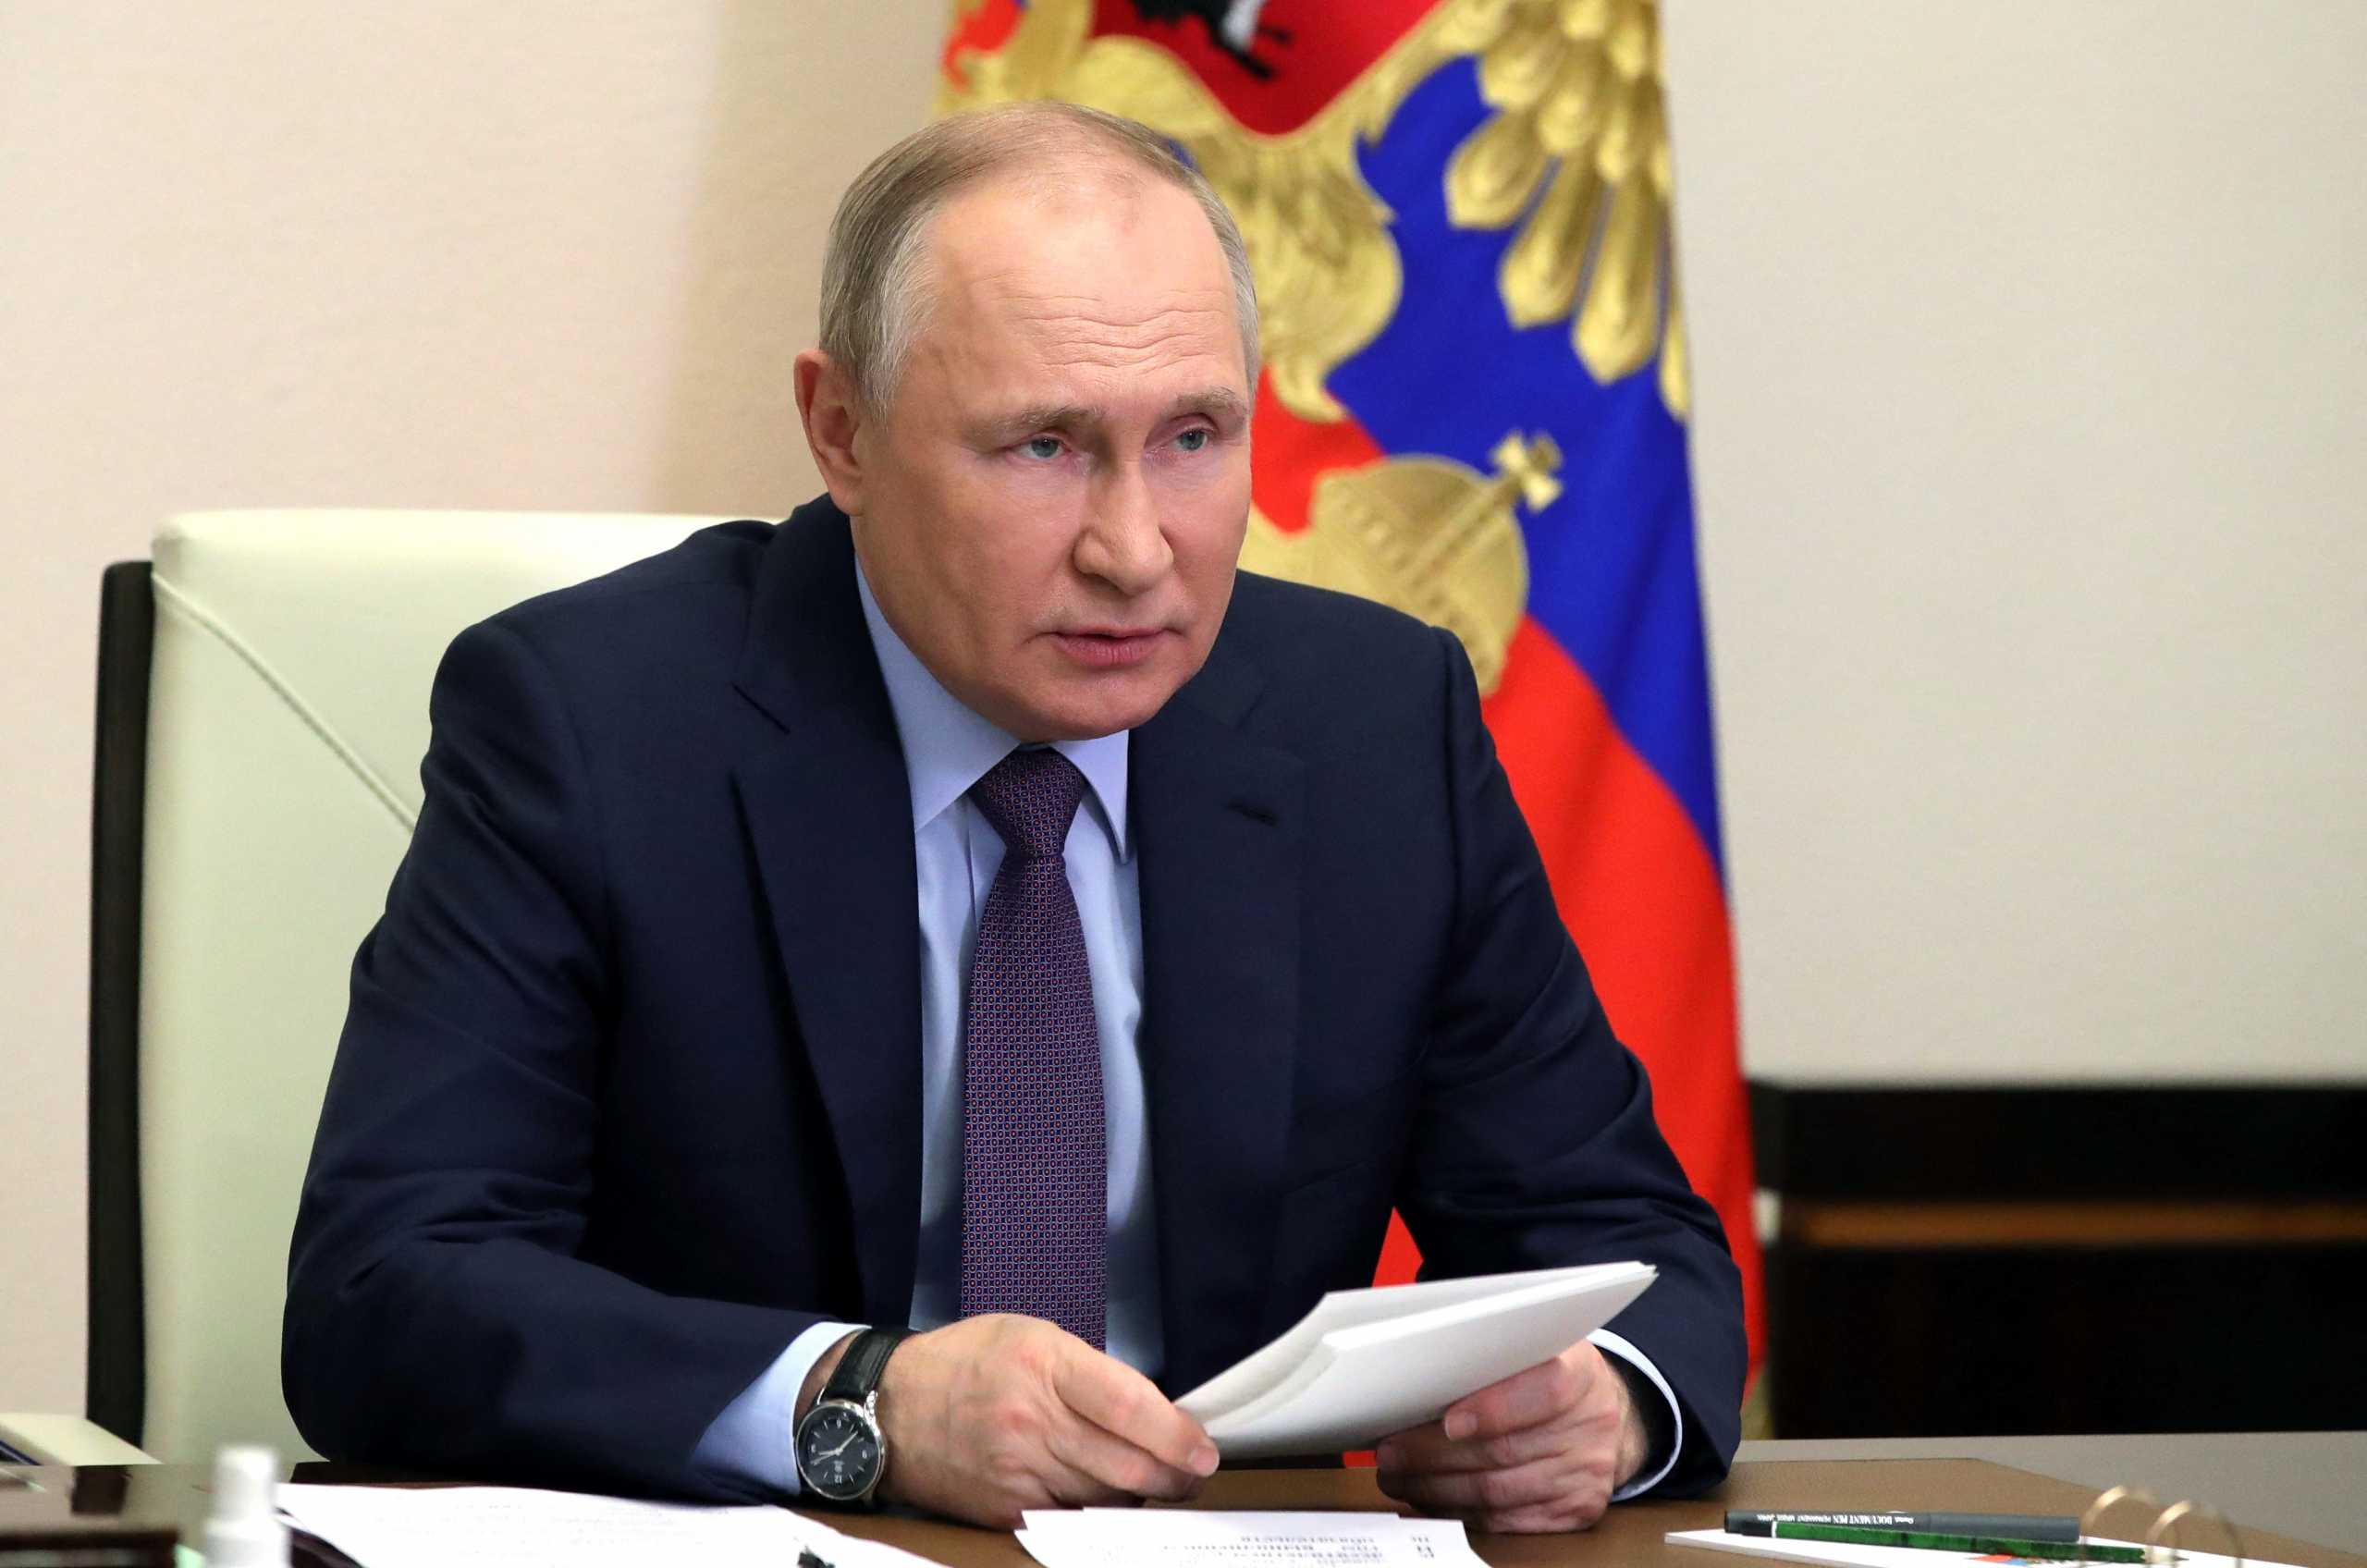 Ο Βλαντιμίρ Πούτιν ζήτησε λίστα με τους στρατηγούς που διαφωνούν με τον πόλεμο στην Ουκρανία